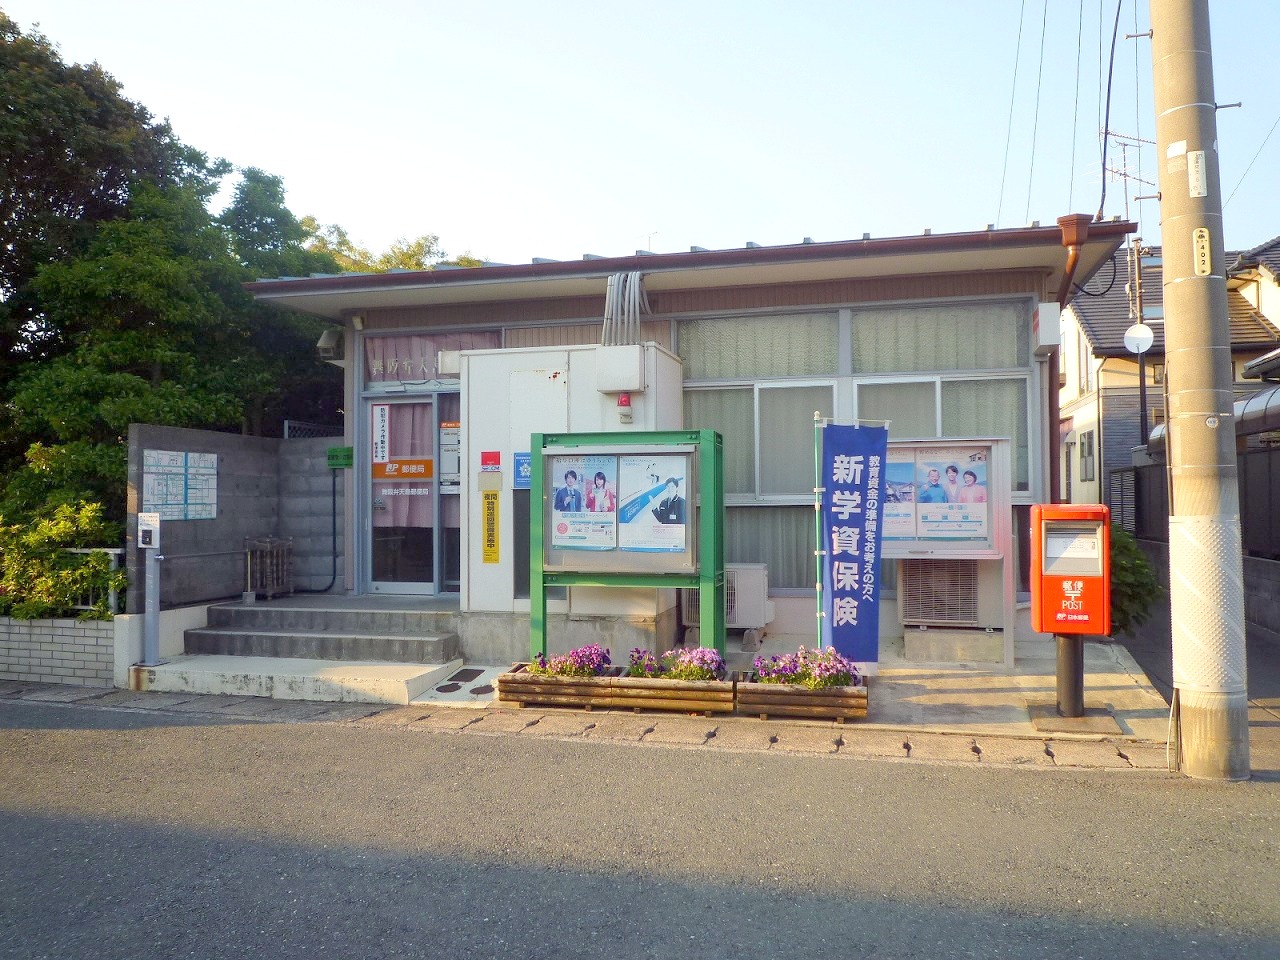 post office. Maisaka Bentenjima 703m to the post office (post office)